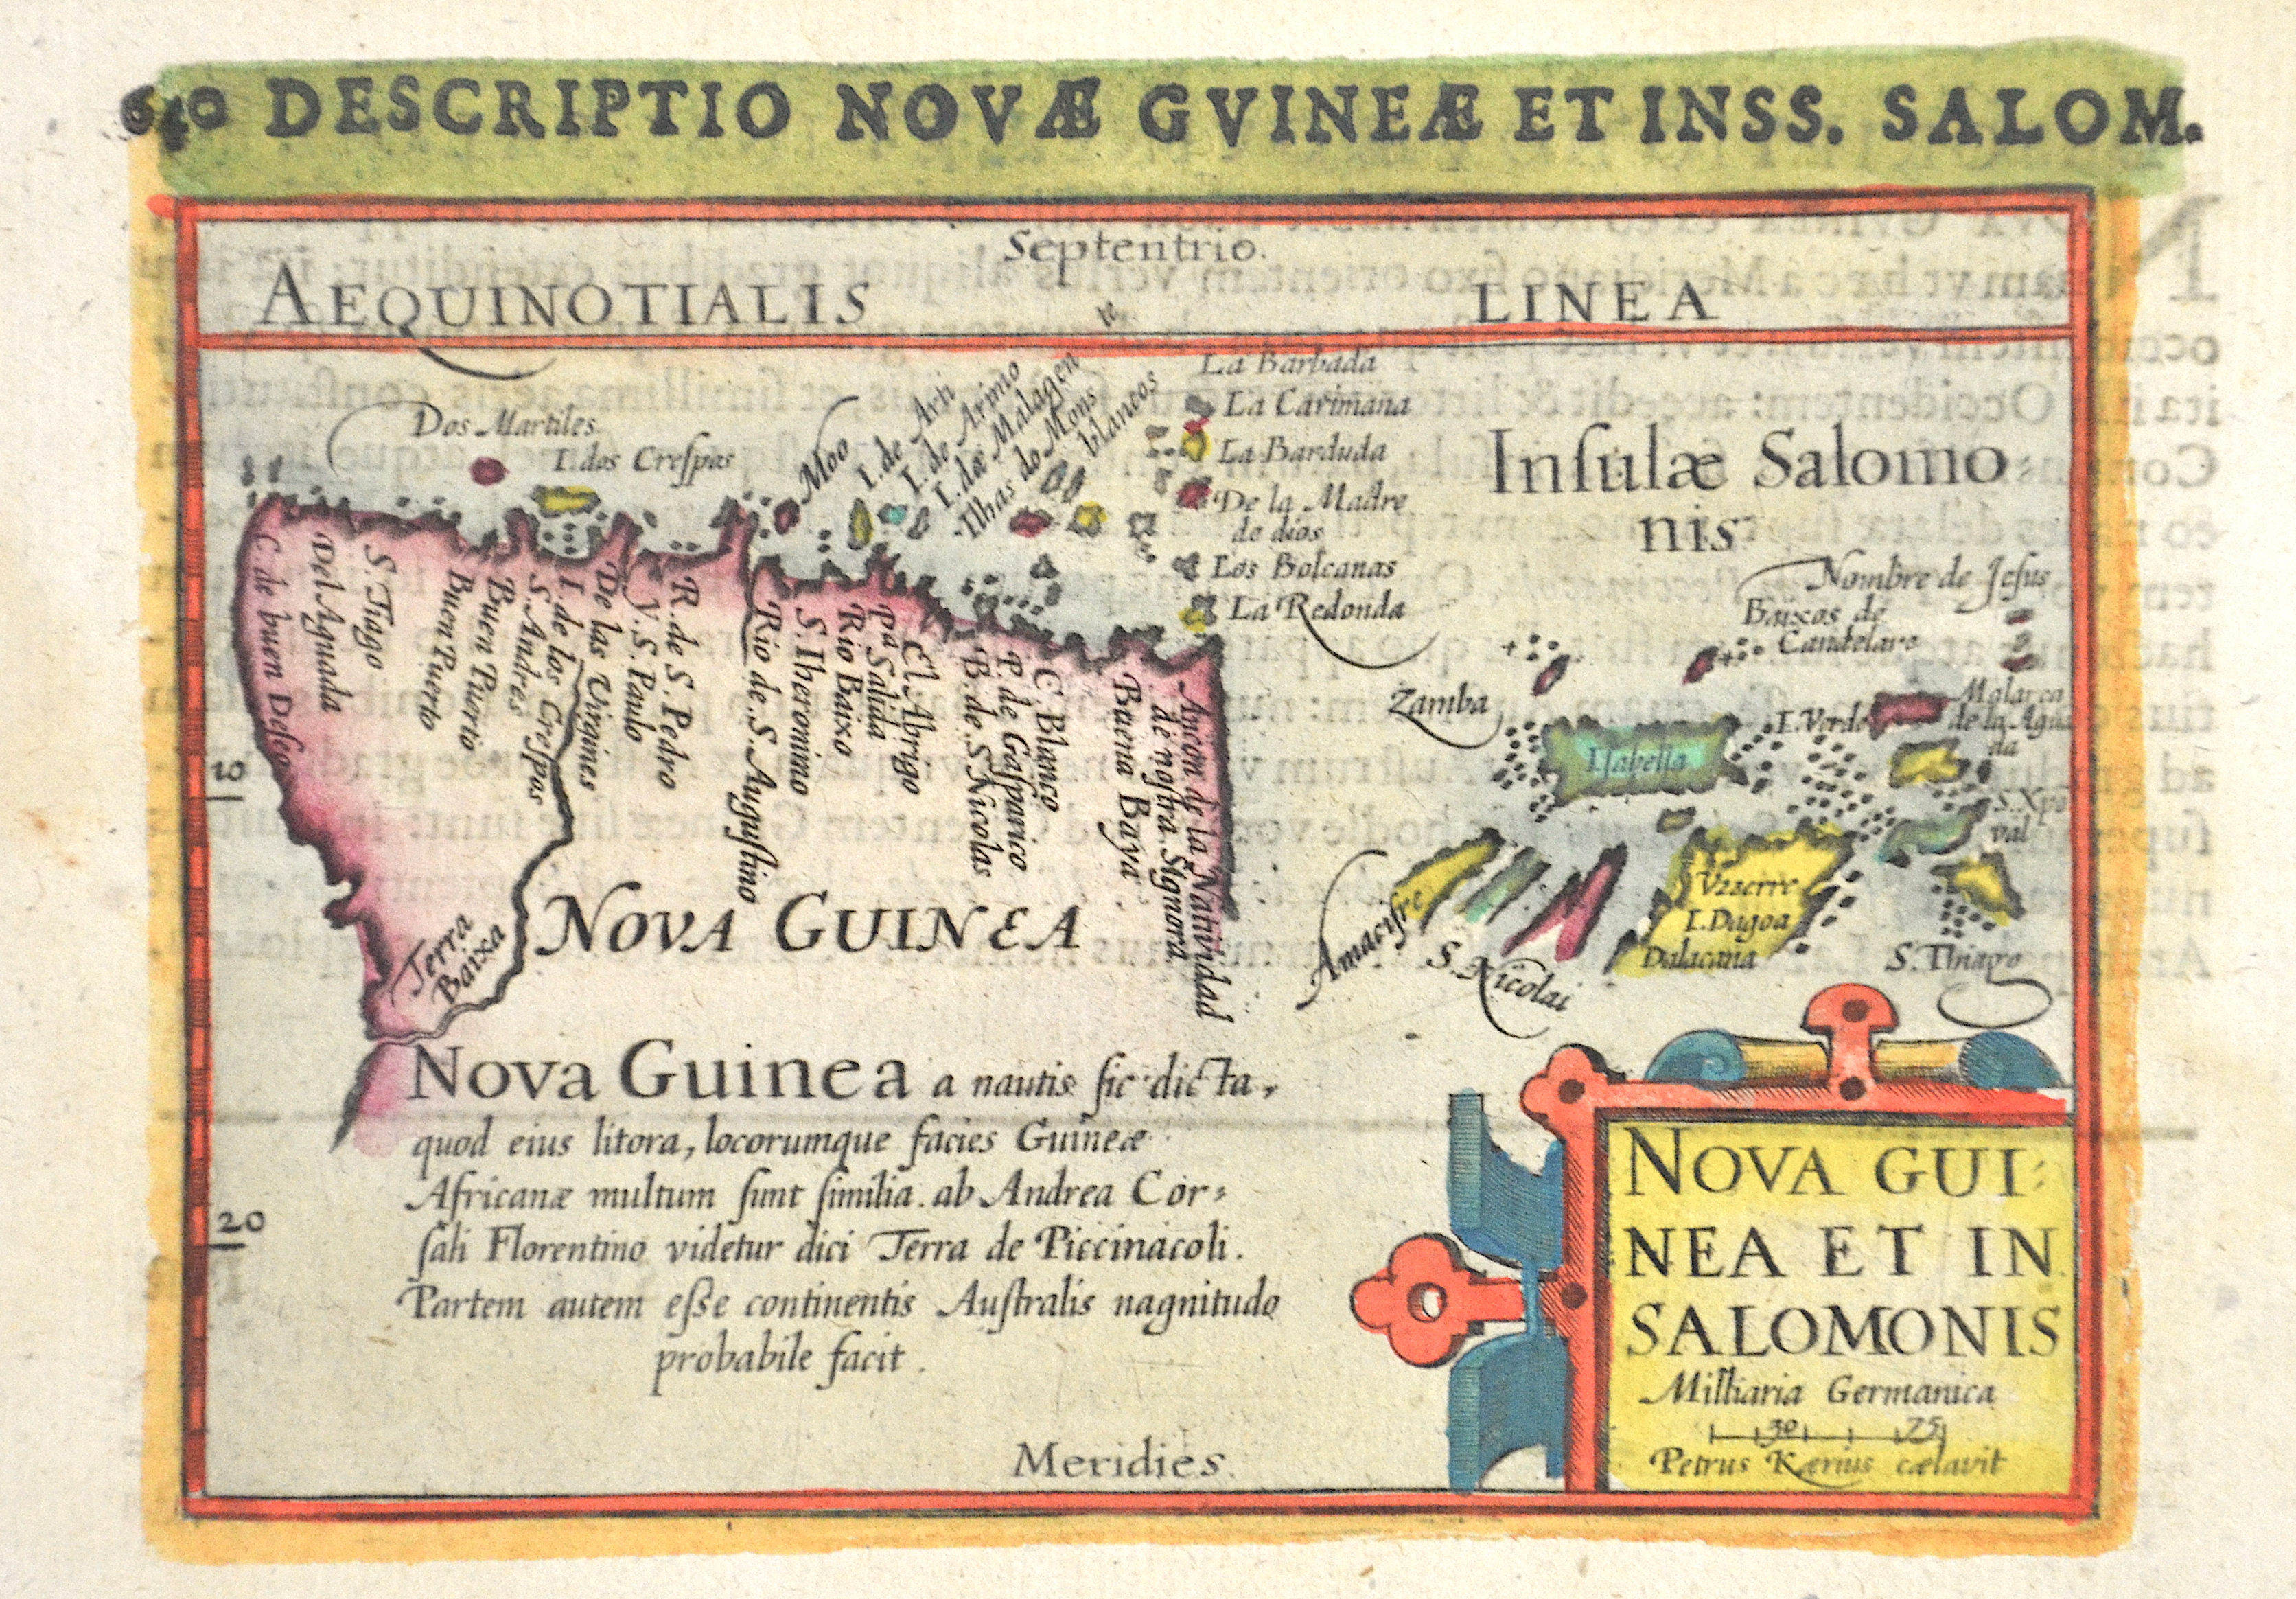 Kaerius Petrus Nova Guinea et in Salomonis